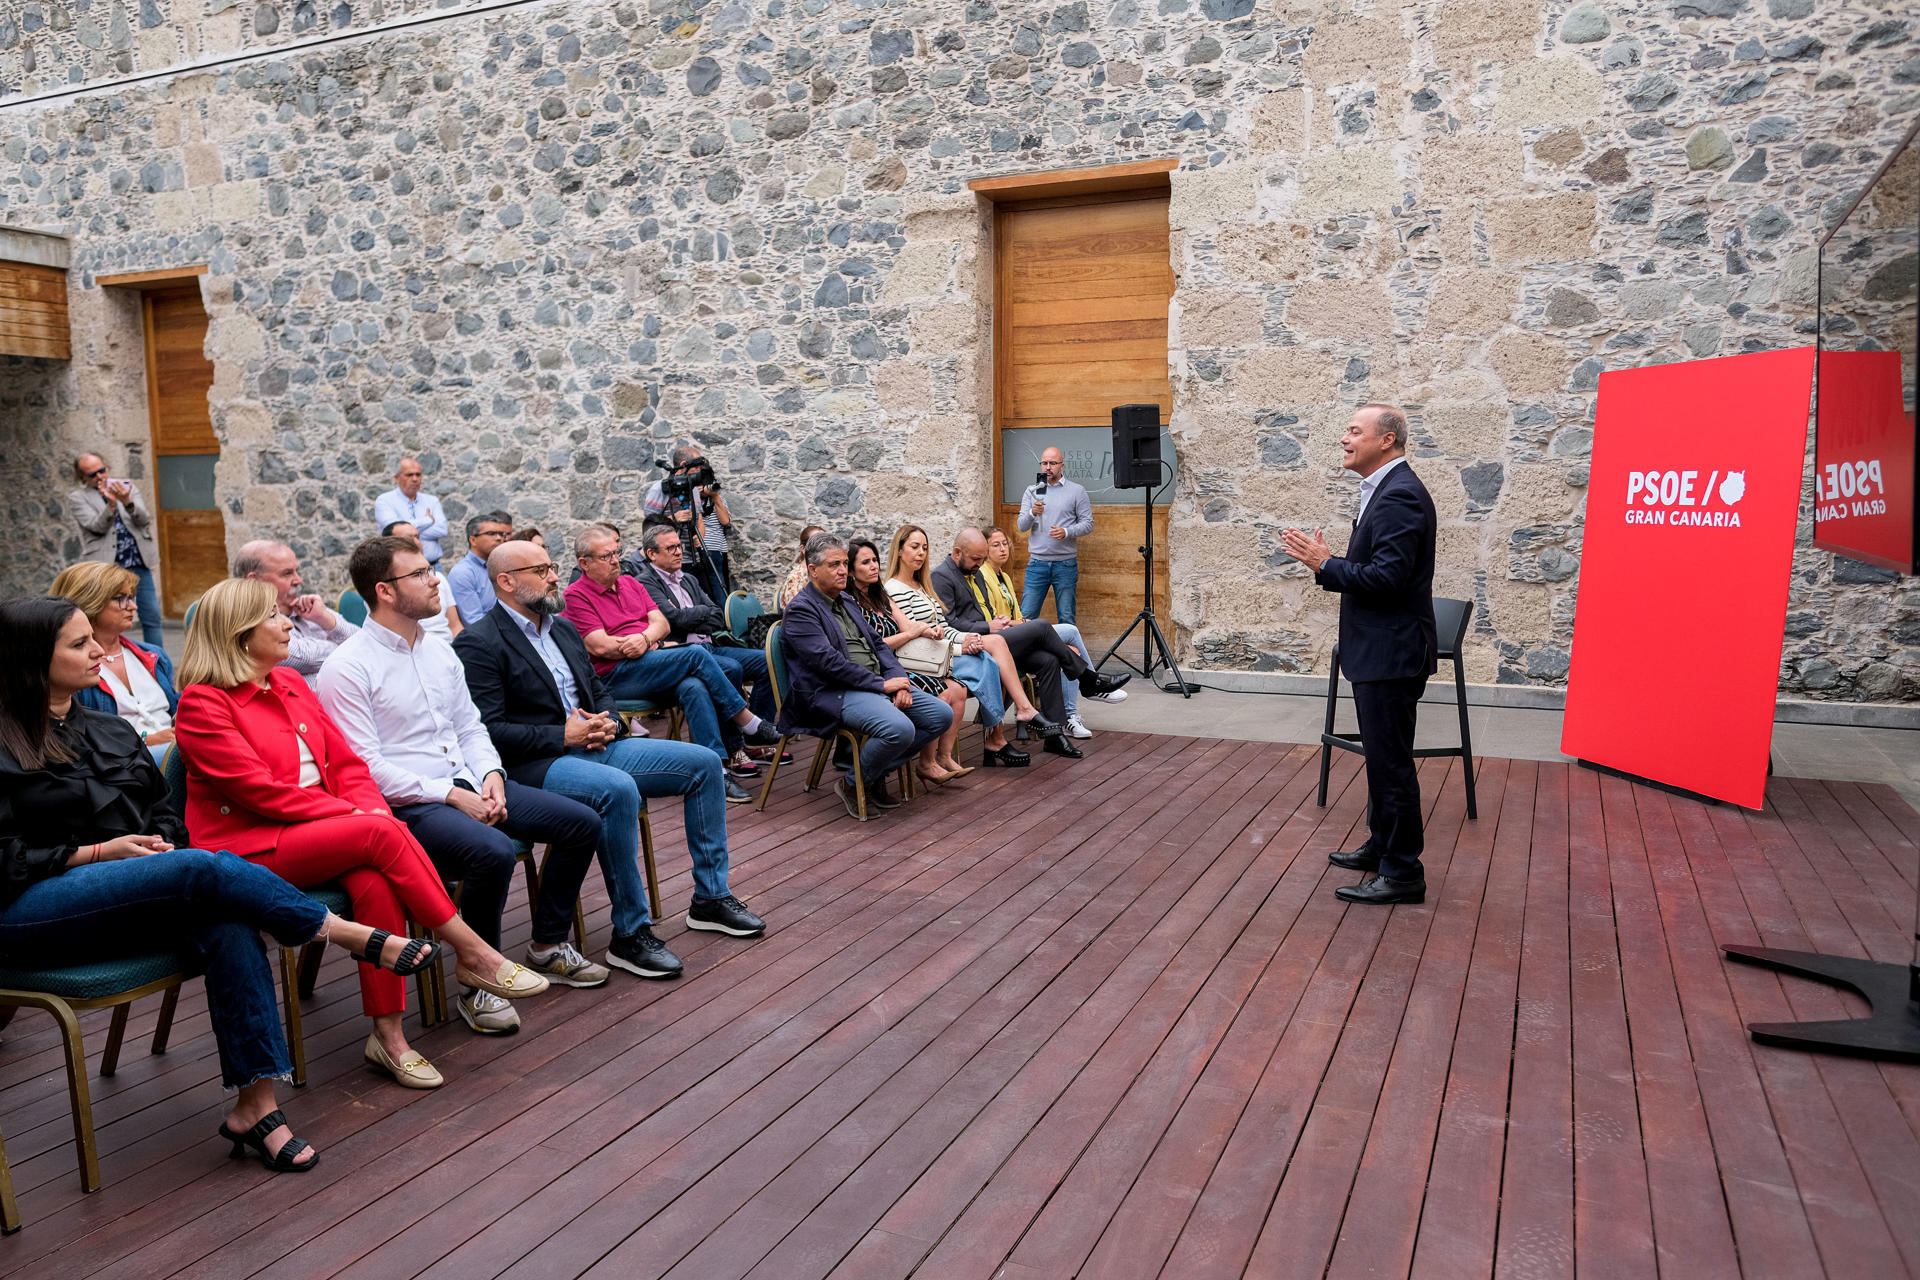 El candidato del PSOE a presidente del Cabildo de Gran Canaria, Augusto Hidalgo, presenta este jueves su nuevo proyecto para transformar el Cabildo "en una institución abierta y participativa". EFE/Ángel Medina G.